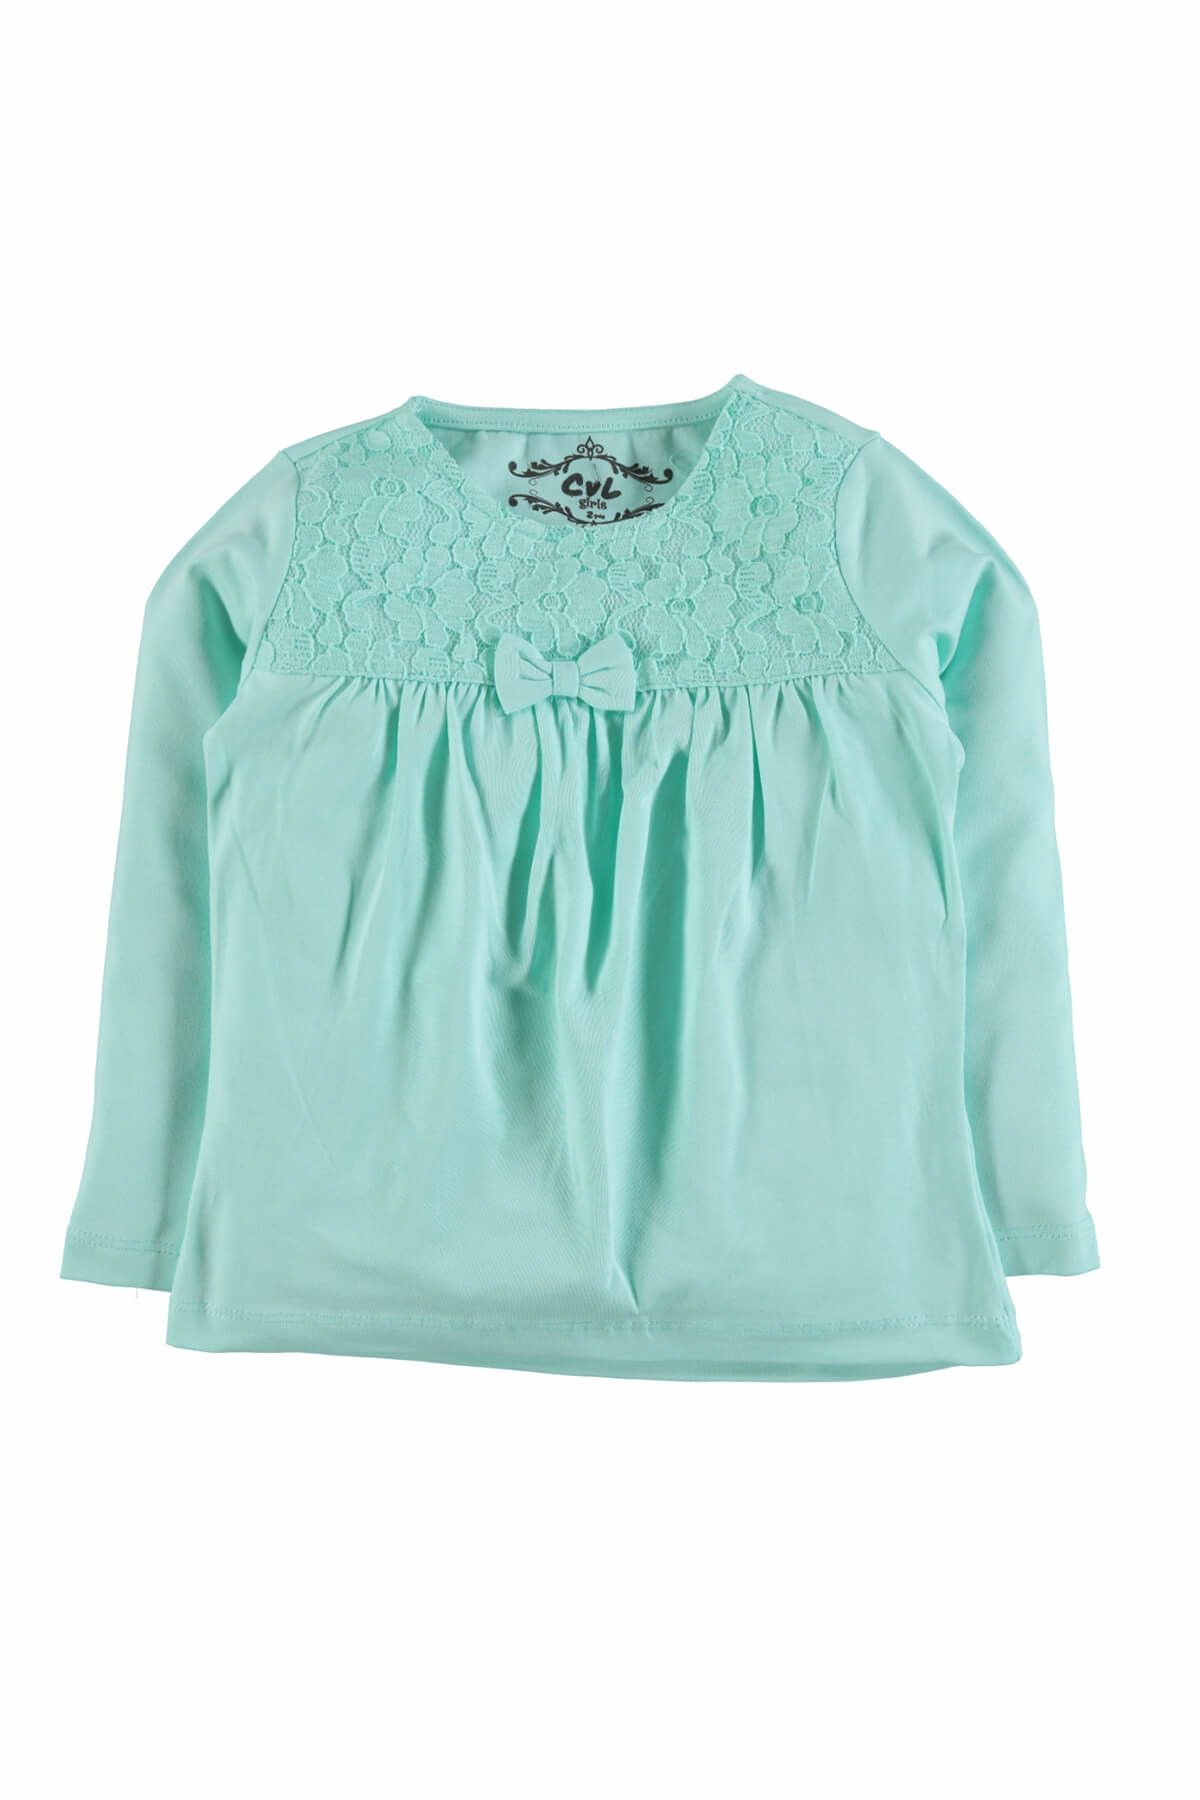 Cvl Mint Yeşili Kız Çocuk Sweatshirt 19a196535K71-1